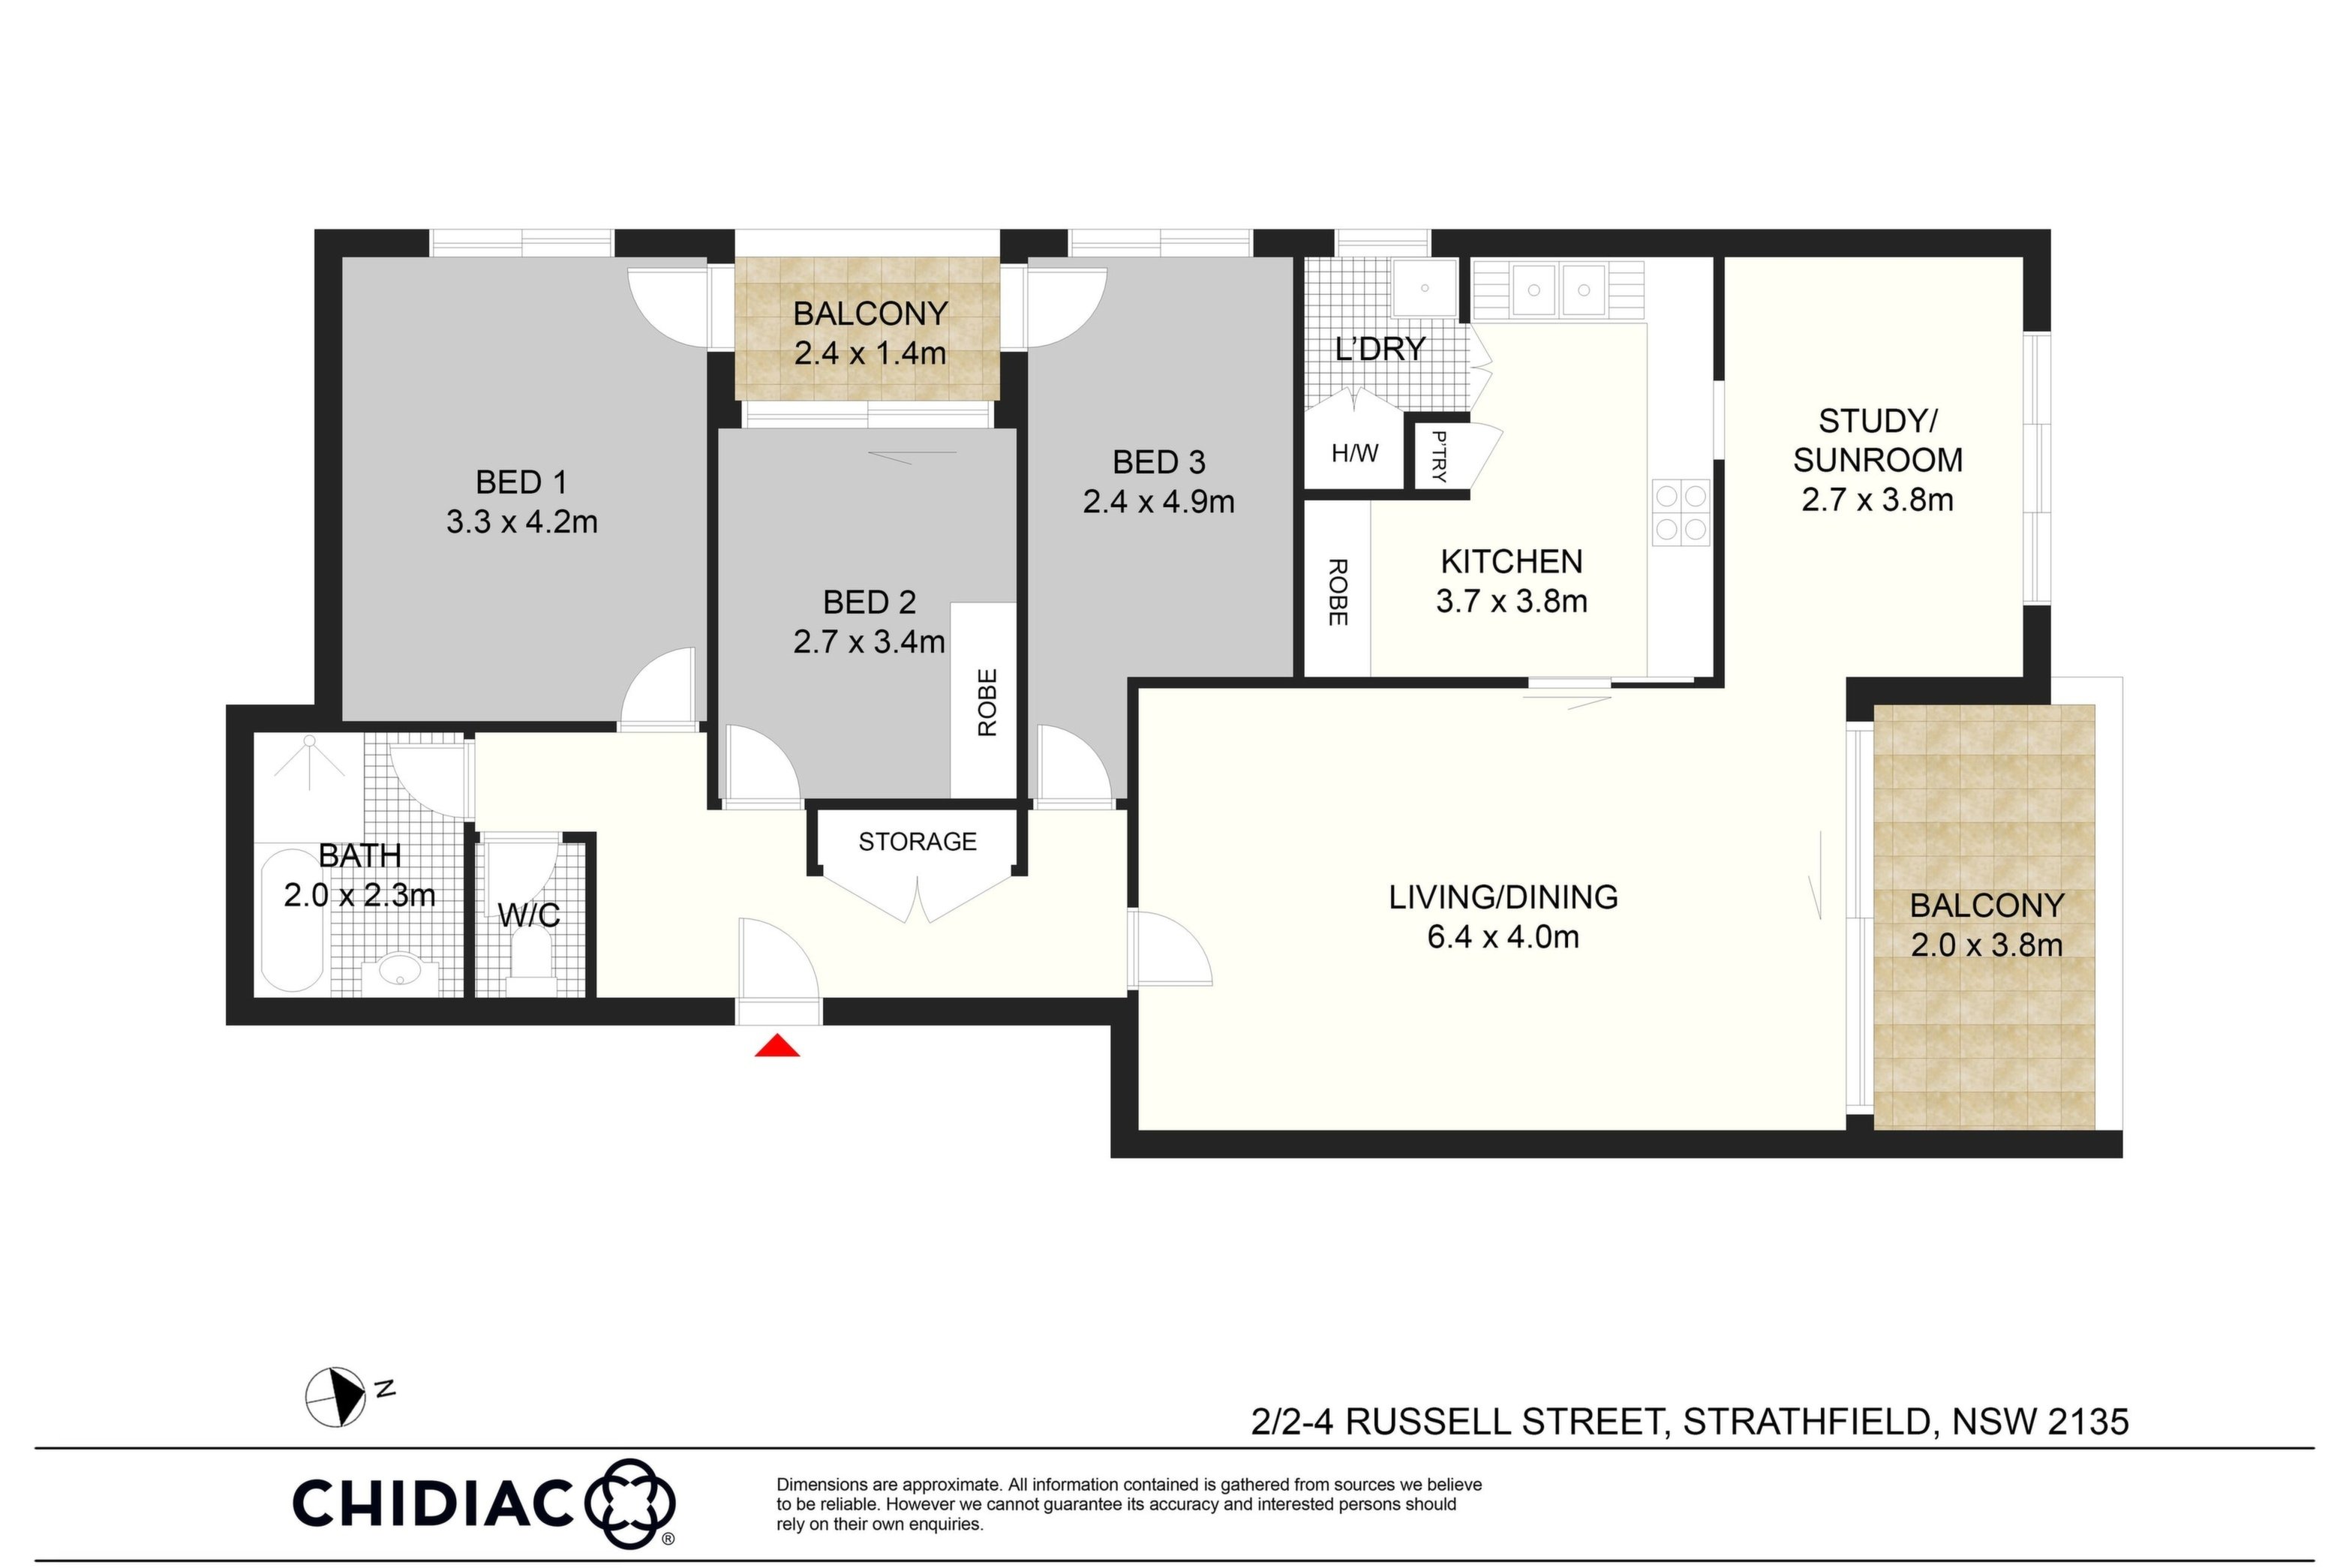 2/2-4 Russell Street, Strathfield Sold by Chidiac Realty - floorplan